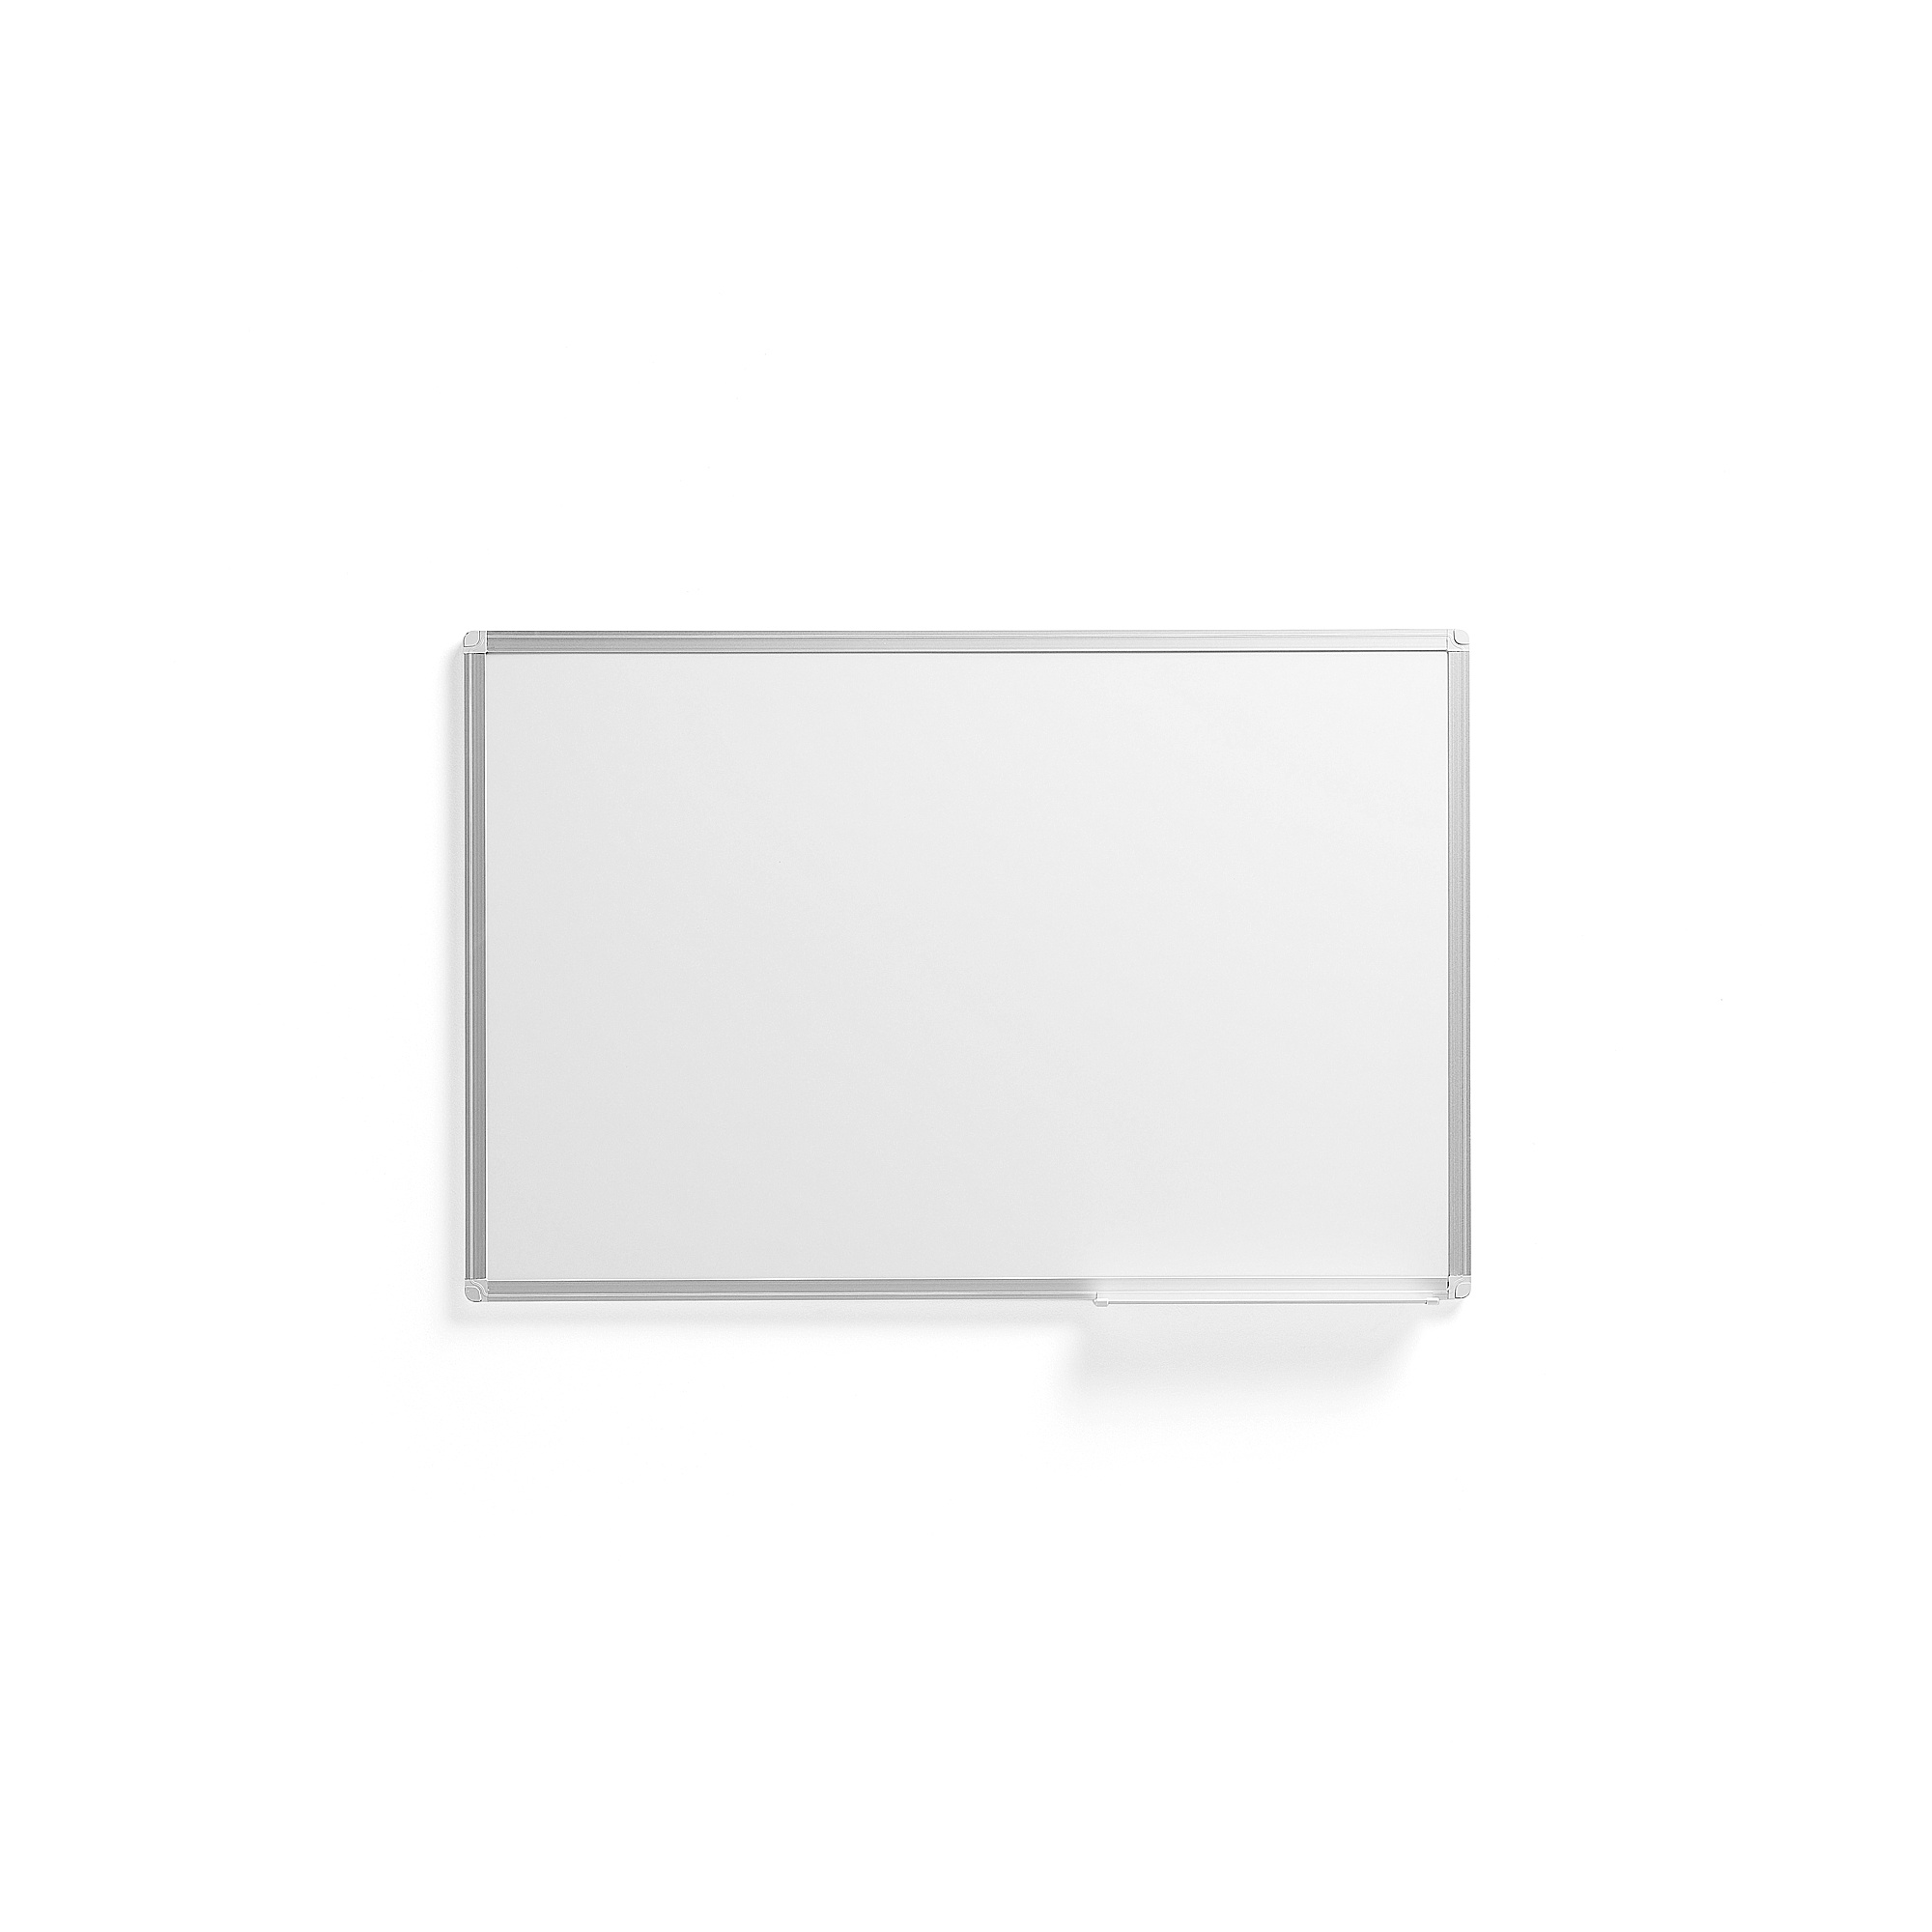 E-shop Biela tabuľa JULIE, 900x600 mm